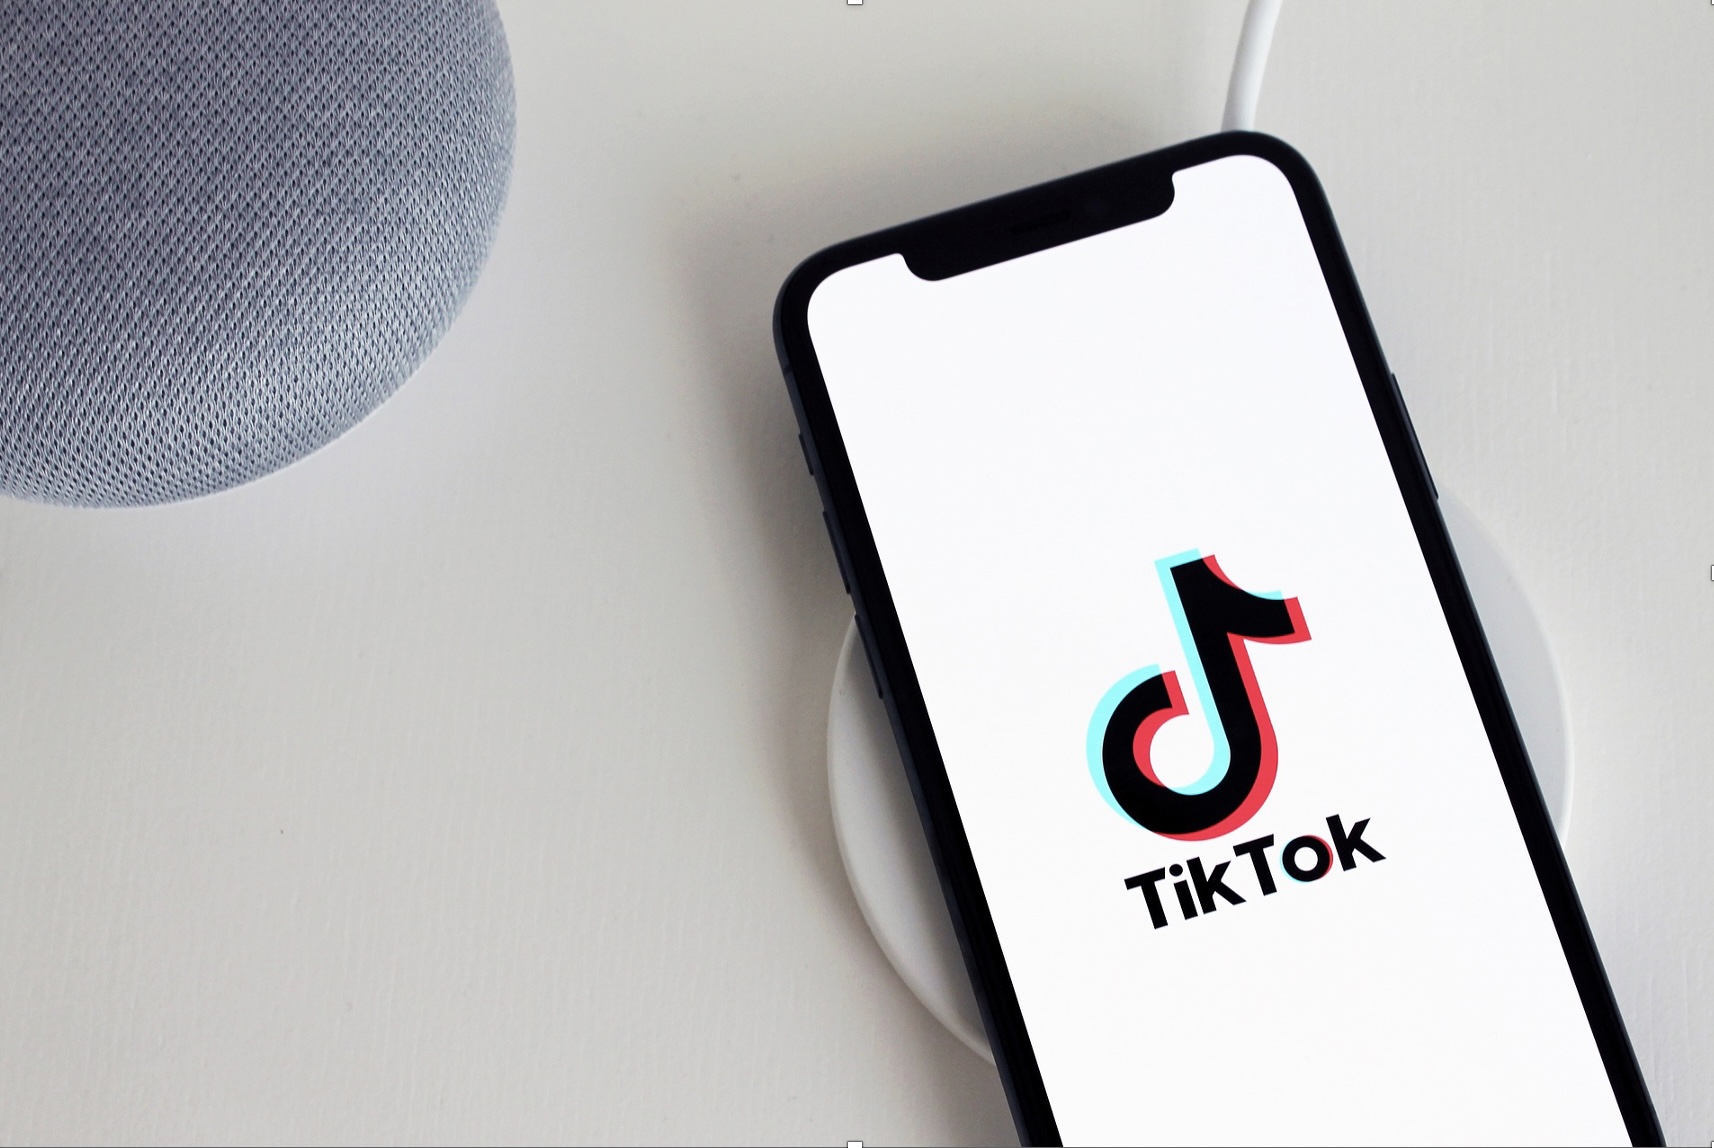 Baixar vídeos do TikTok de forma fácil, rápida e grátis 1